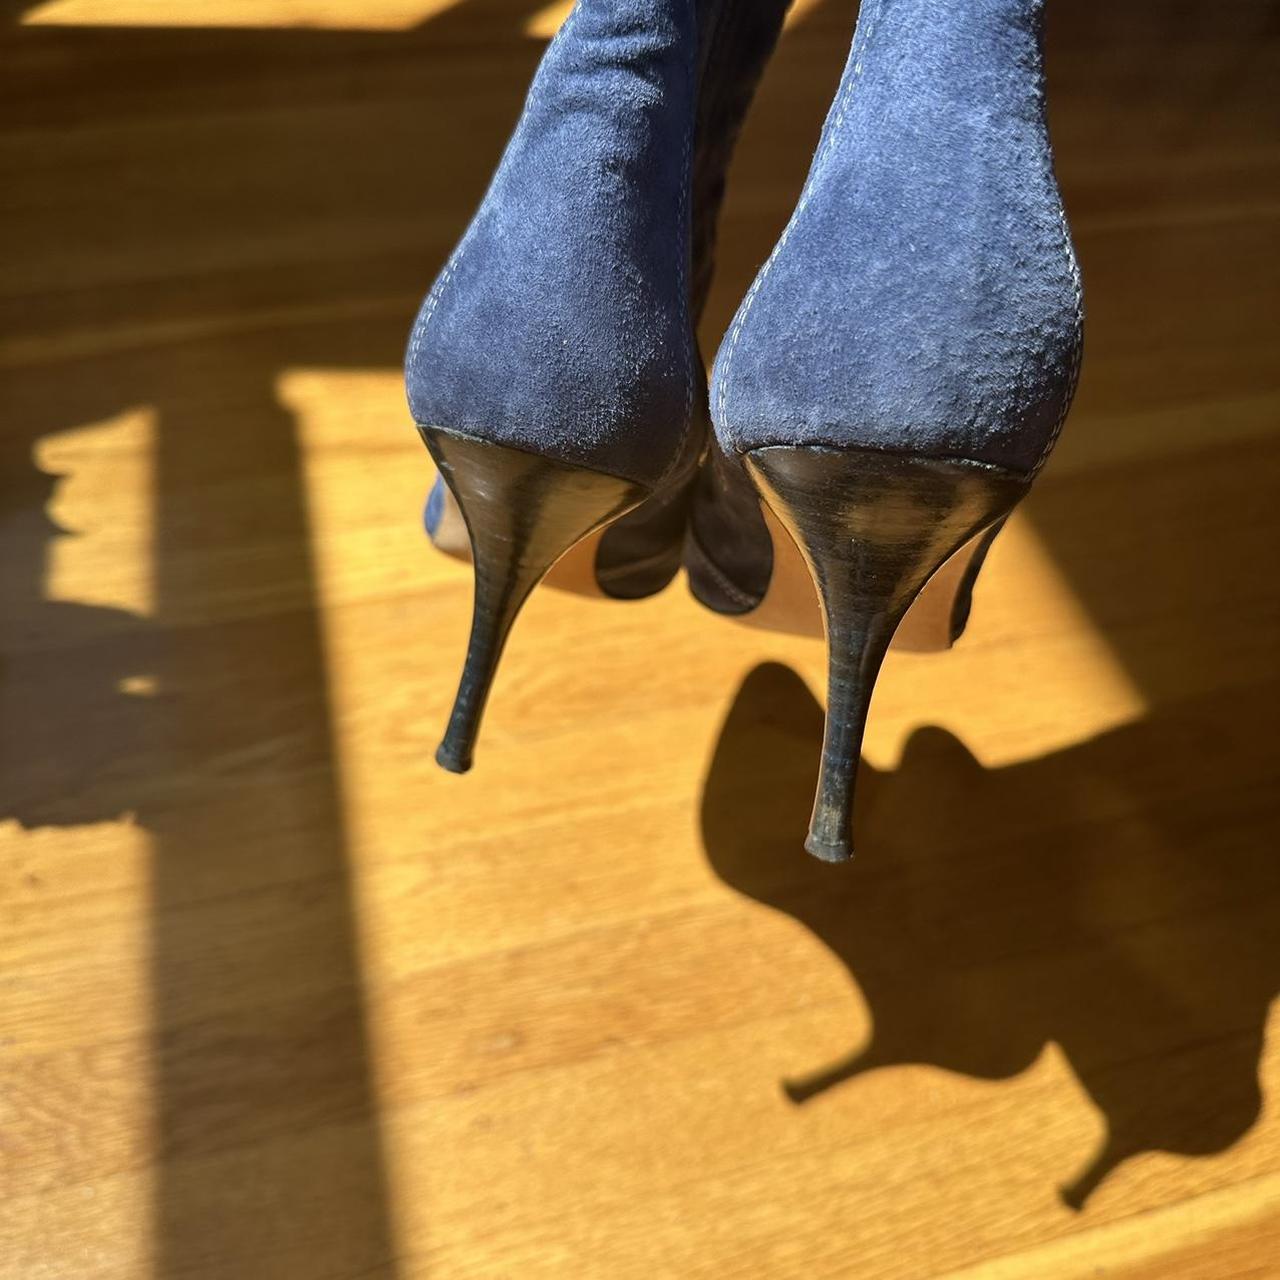 Manolo Blahnik Women's Blue Boots | Depop